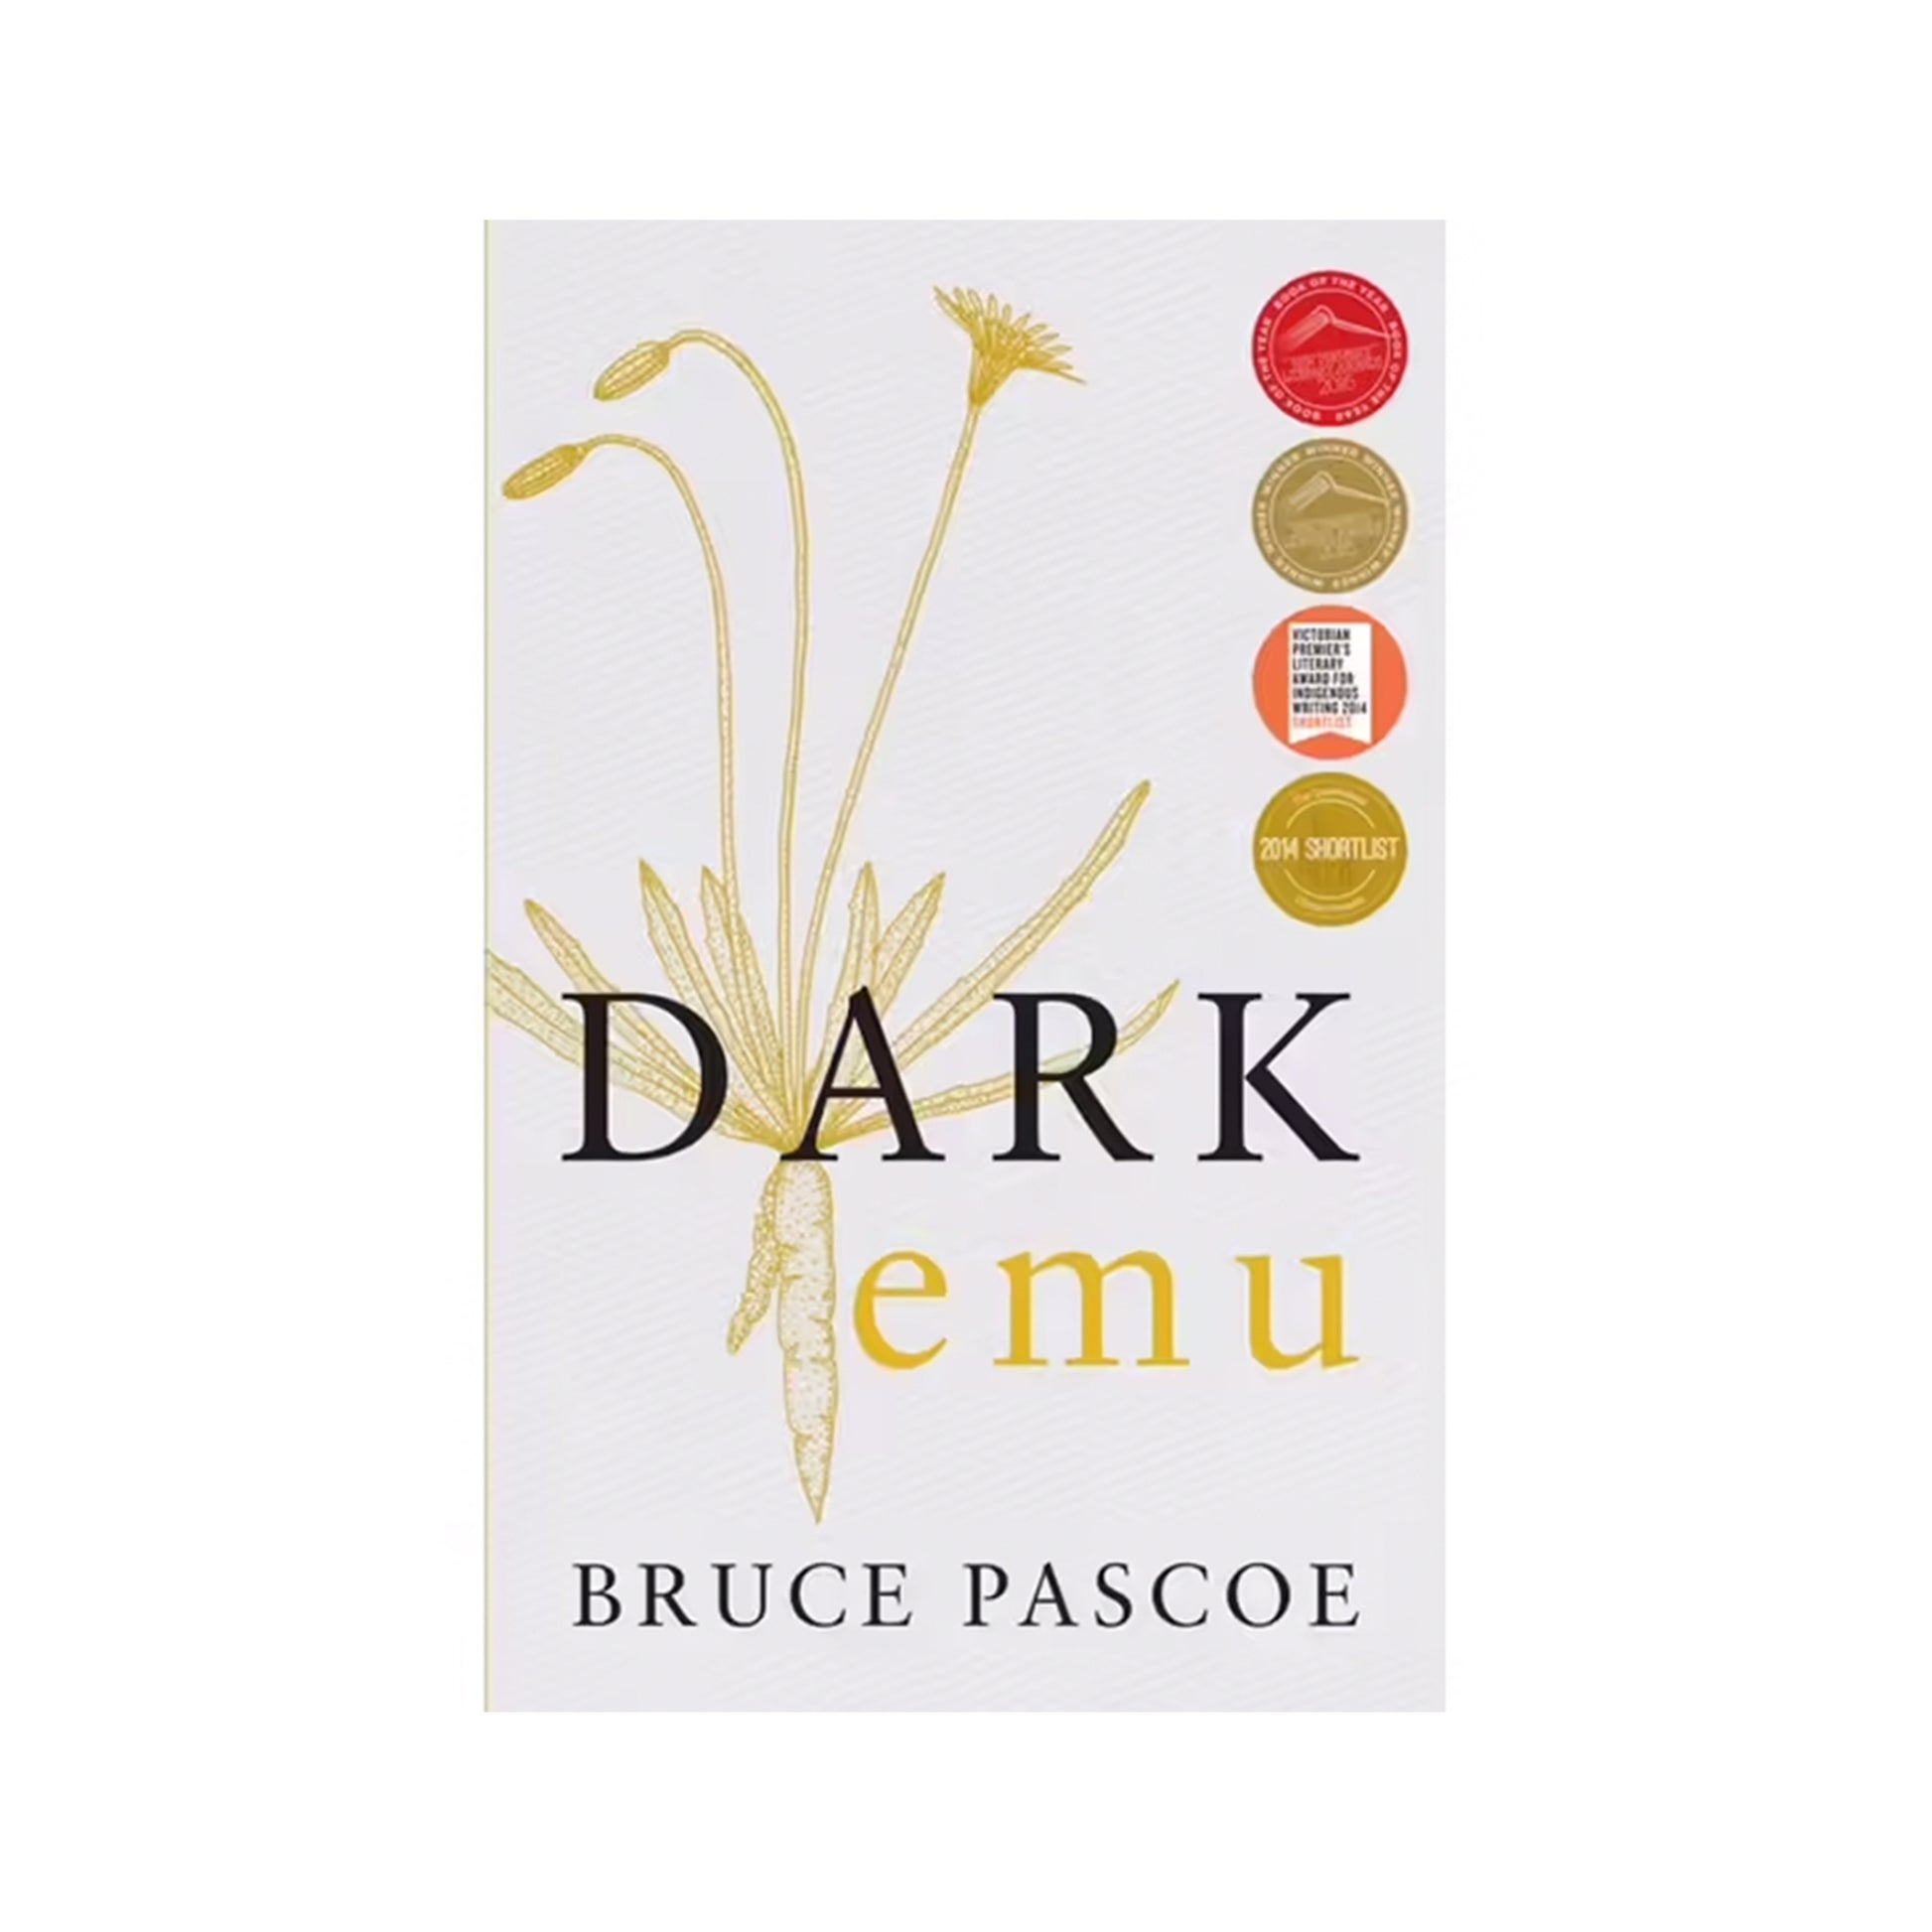 Book cover of 'Dark Emu' by Bruce Pascoe